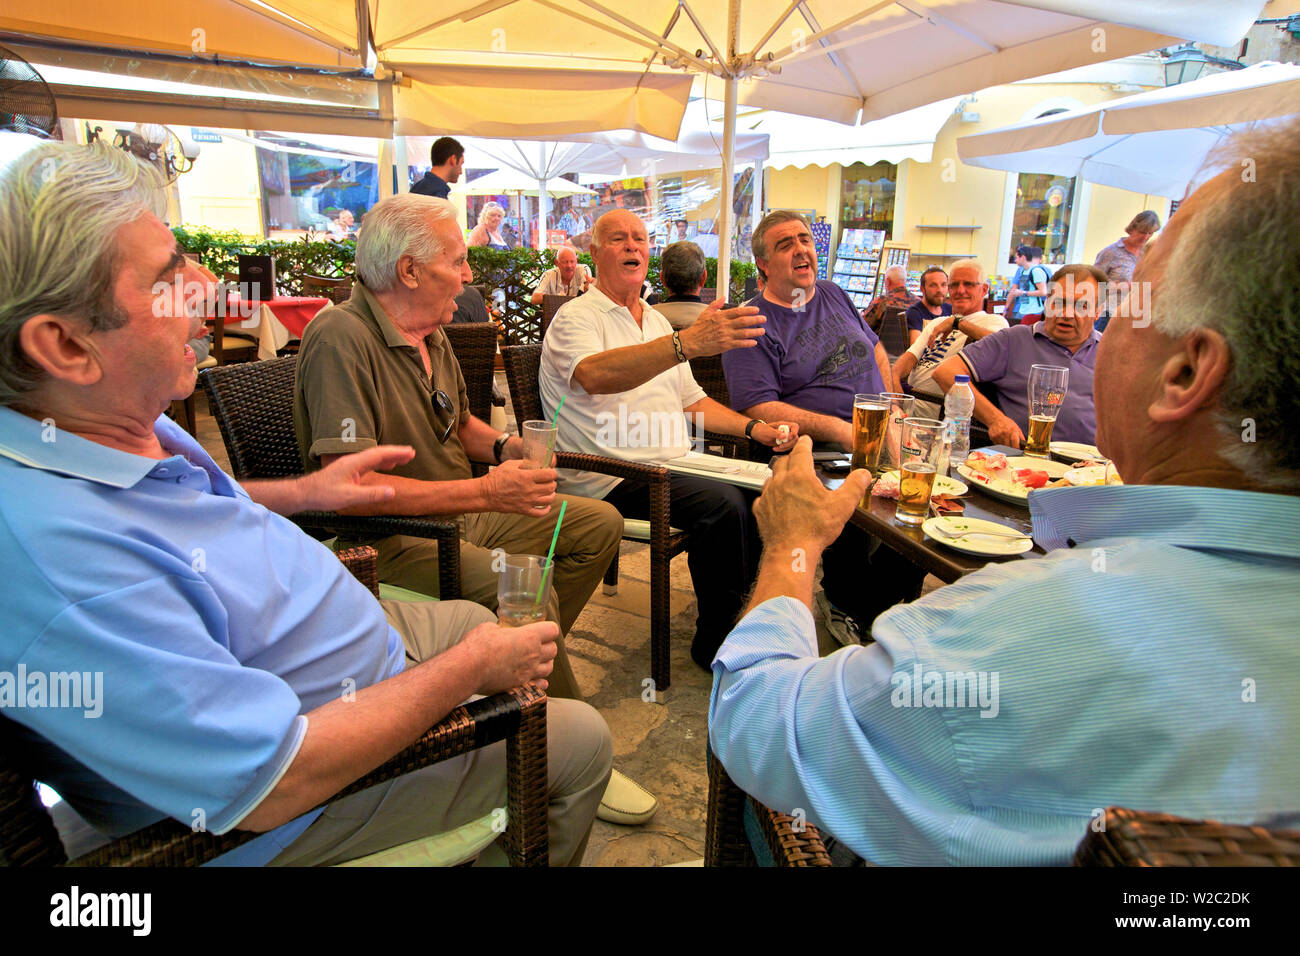 Le Chant des personnages locaux dans un café, la vieille ville de Corfou, Corfou, îles Ioniennes, îles grecques, Grèce, Europe Banque D'Images